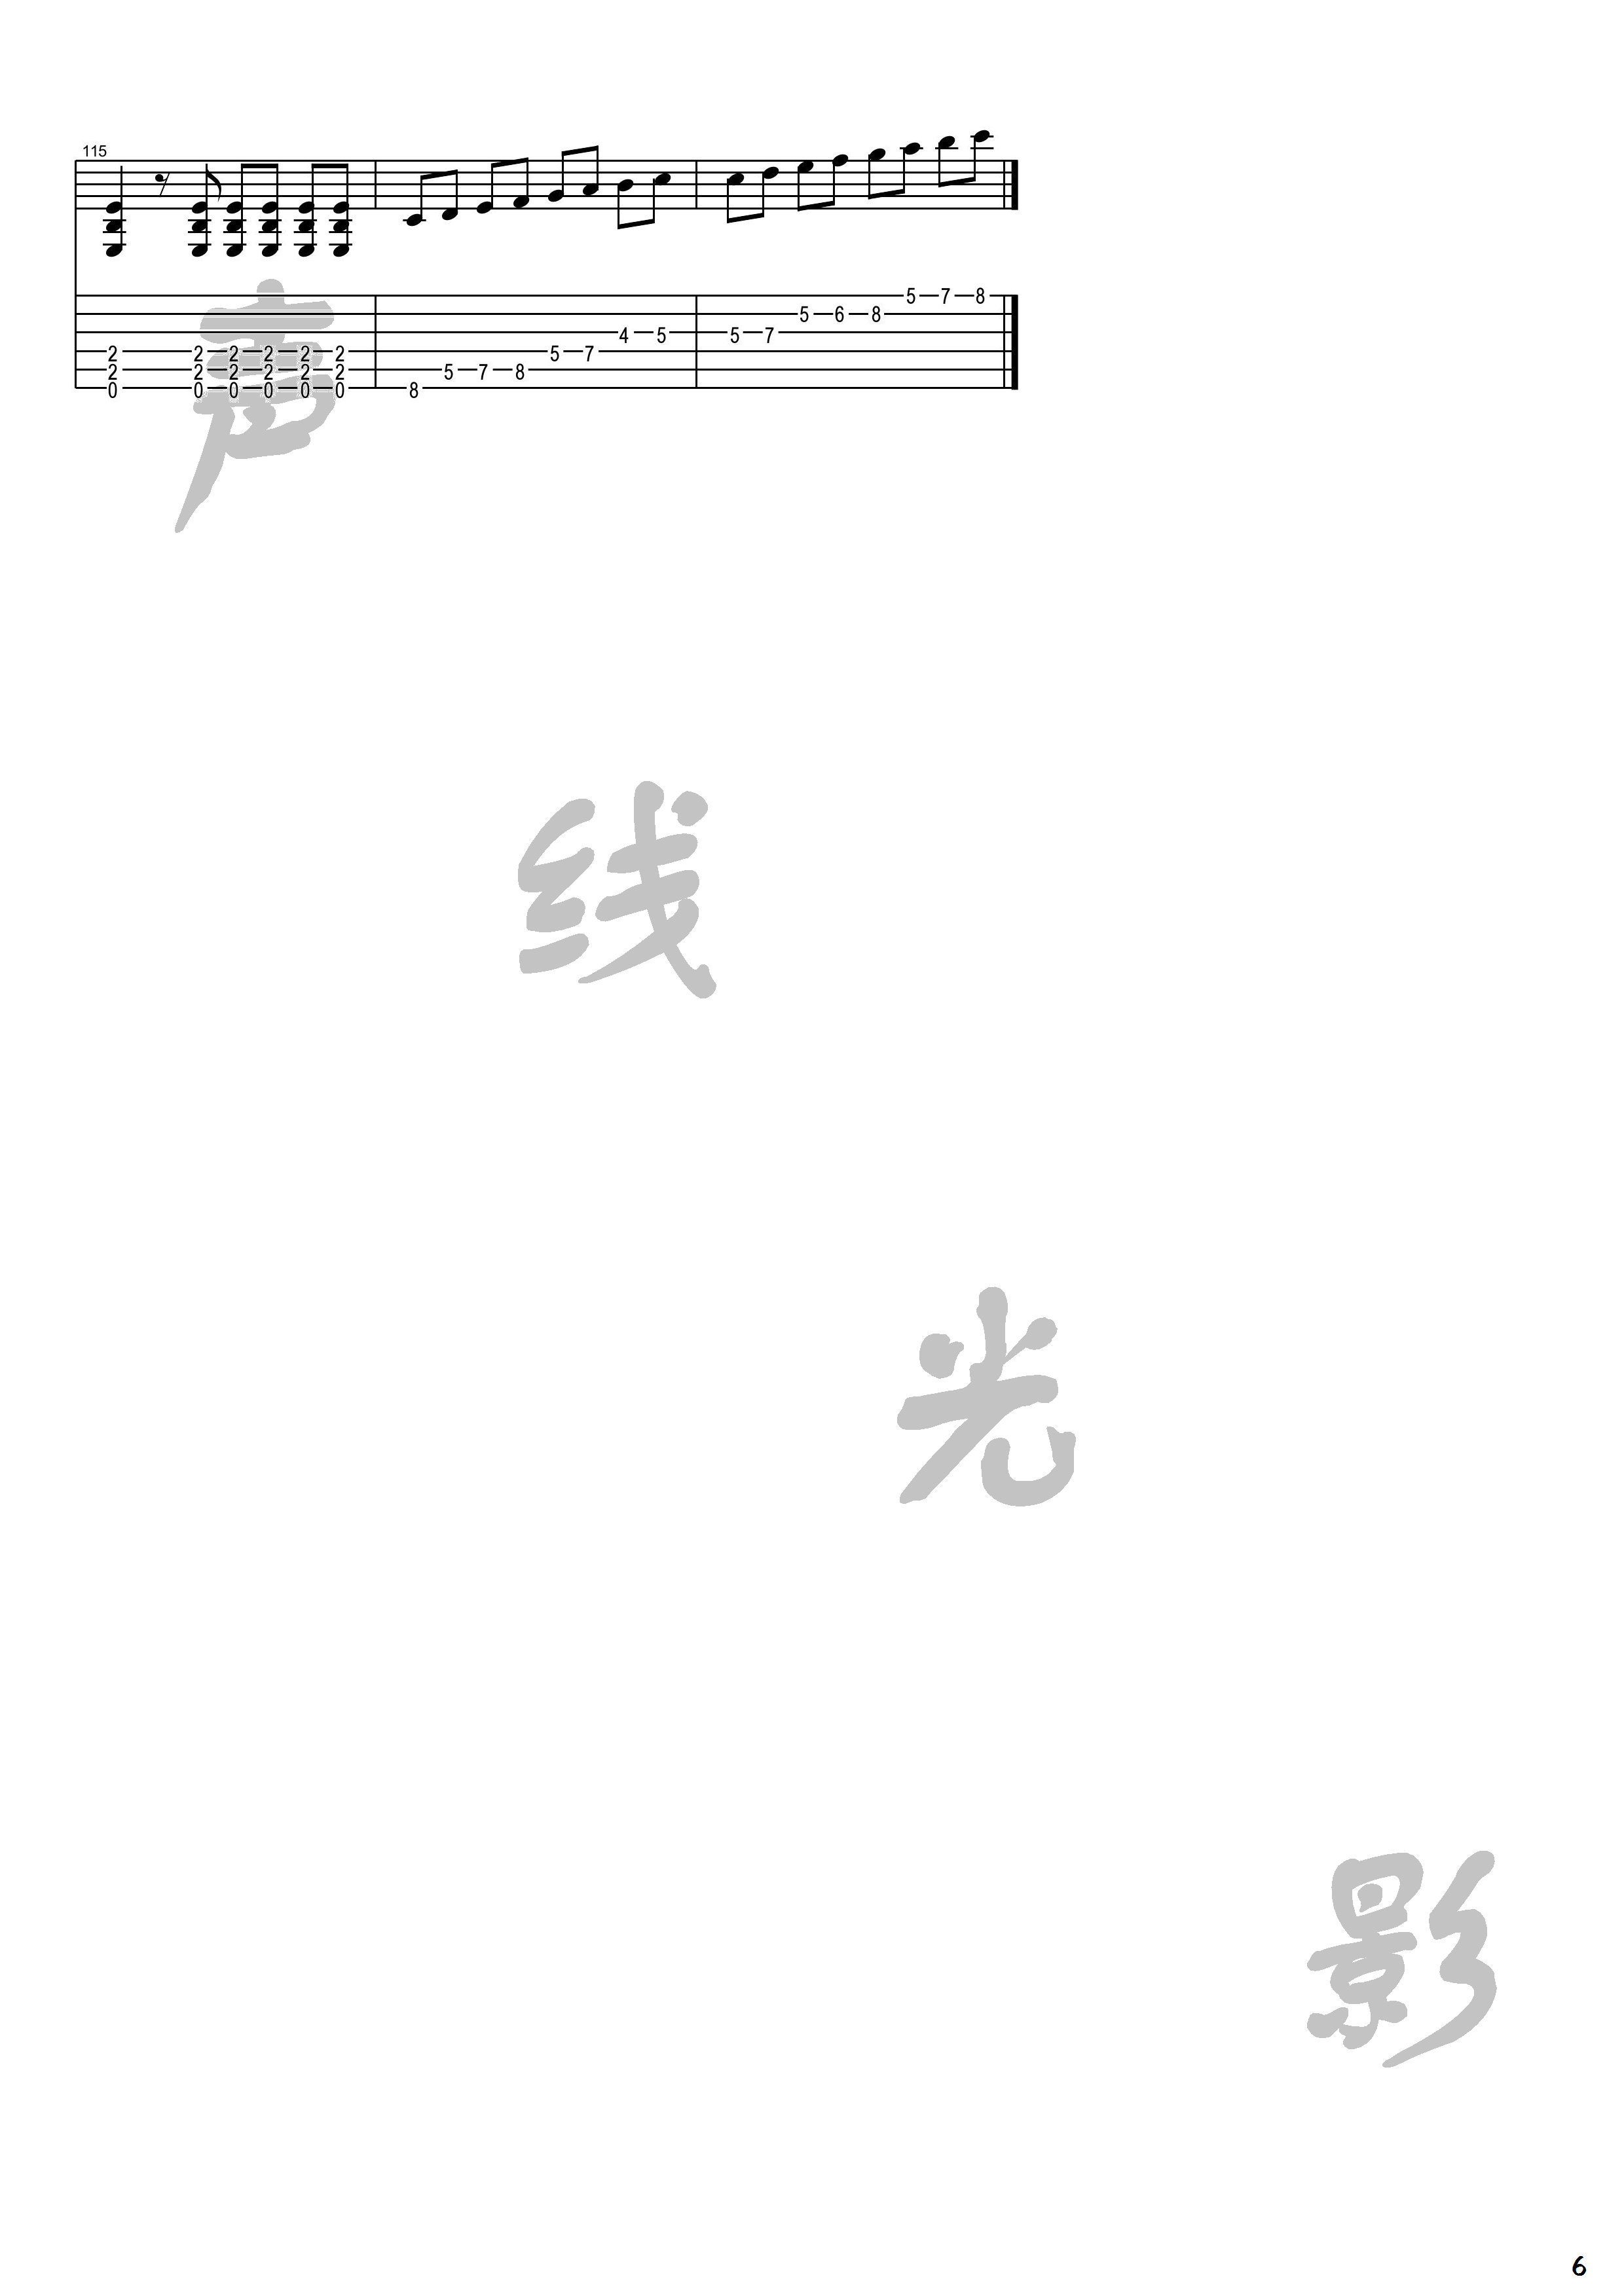 丁建国写的歌吉他谱(图片谱,电吉他)_原声带(OST;Original Soundtrack;电影)_丁建国写的歌_6.png